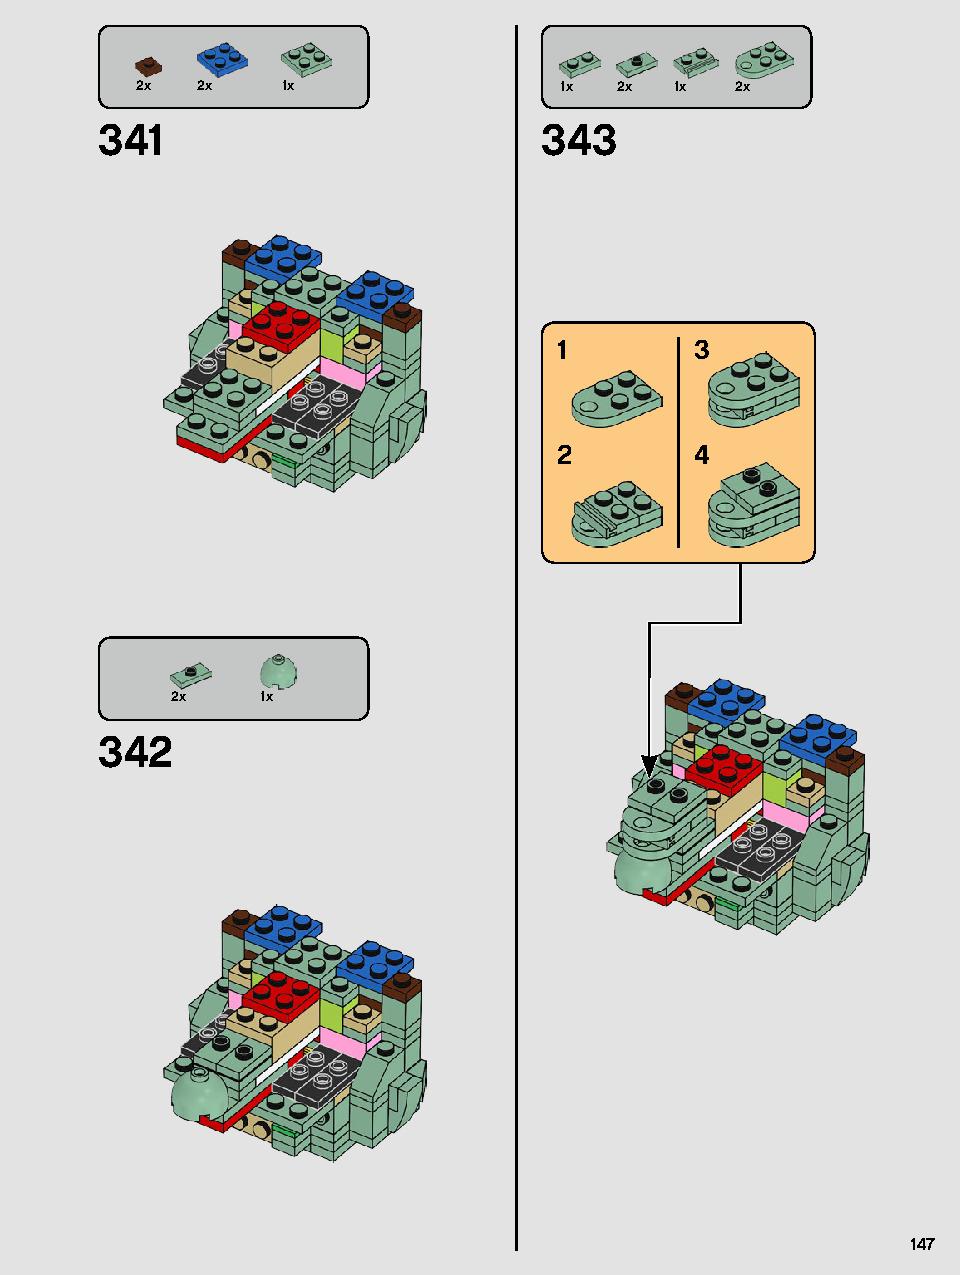 ヨーダ™ 75255 レゴの商品情報 レゴの説明書・組立方法 147 page